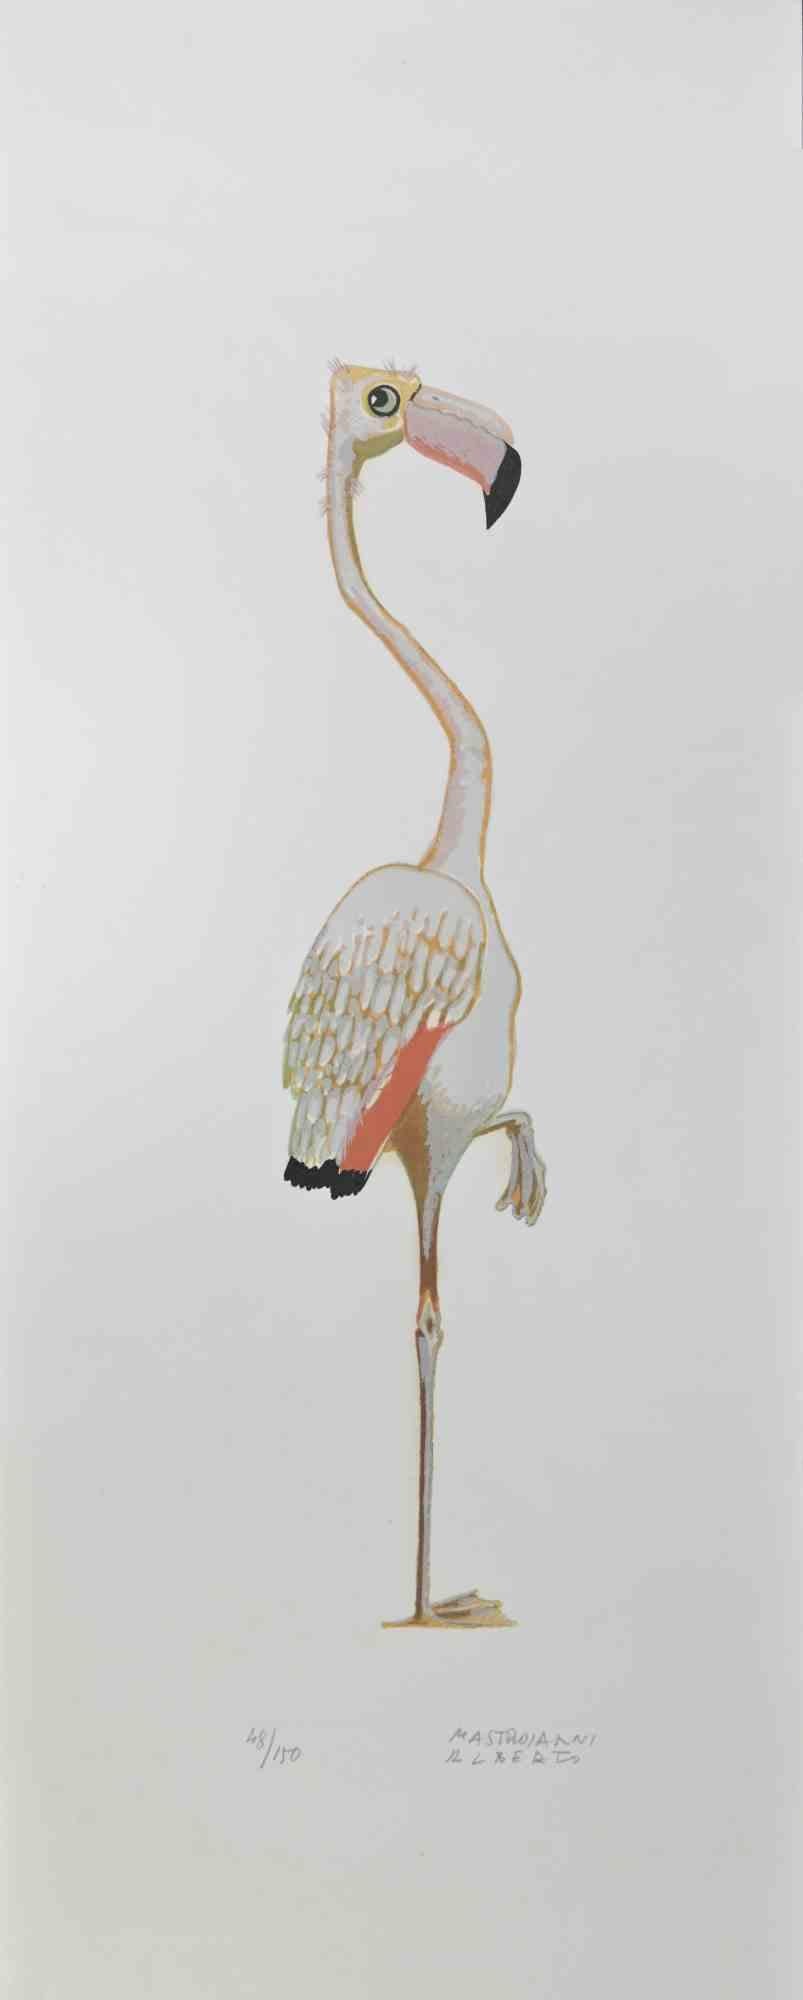 Flamingo est une lithographie réalisée par Alberto Mastroianni dans les années 1970.

Signé à la main dans la marge inférieure droite. Numéroté au crayon dans la partie inférieure, édition de 150 tirages.

L'œuvre d'art représente un flamant rose